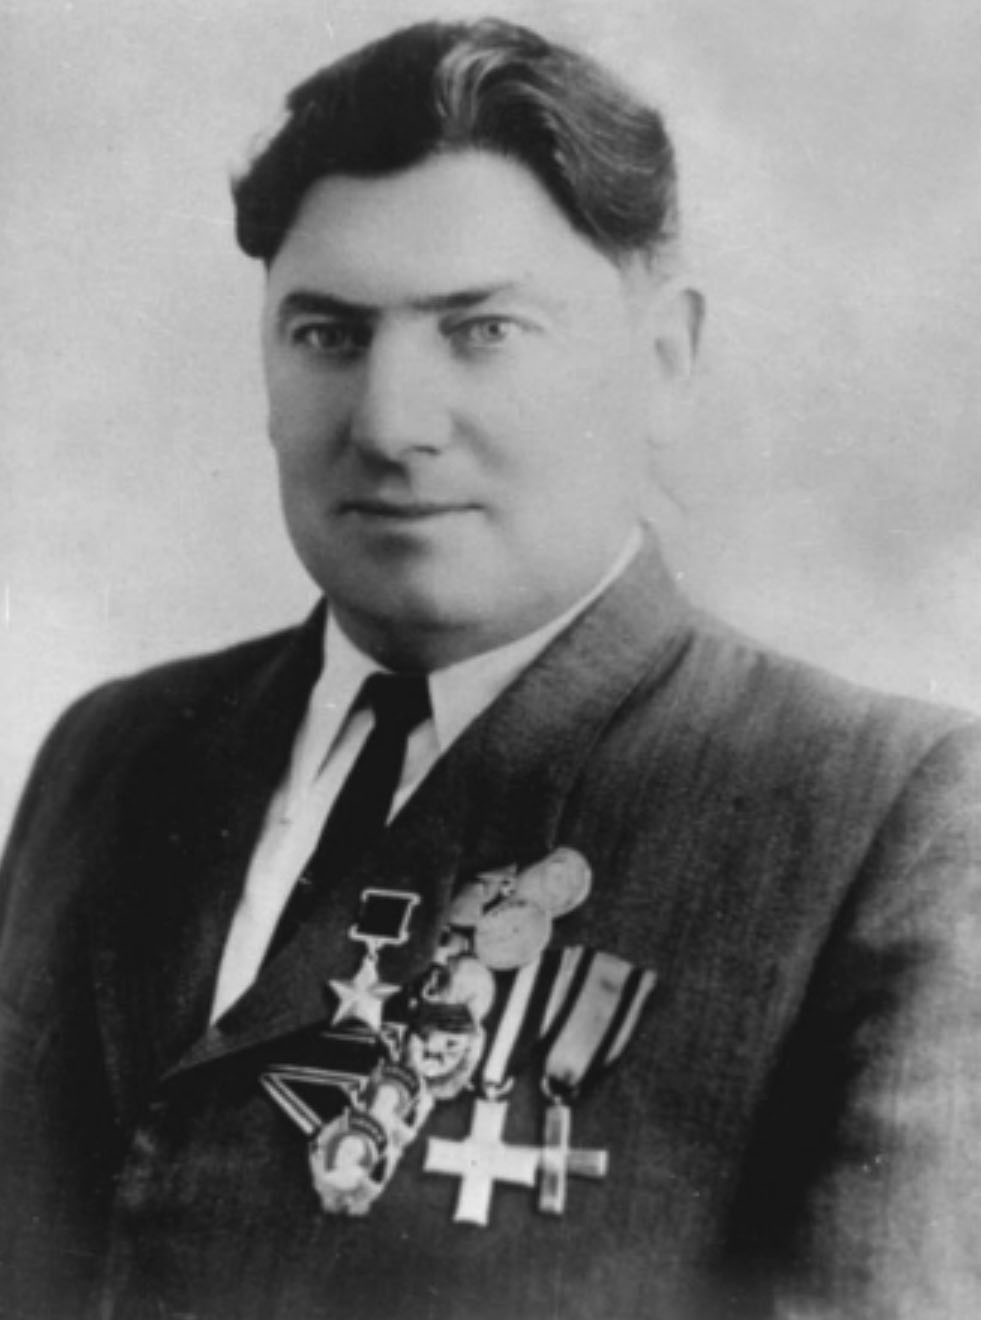 Виктор Александрович Карасёв был отмечен польскими орденами «Крест Грюнвальда» и «Партизанский крест», чехословацкой наградой «Партизанская звезда», ему присвоено звание Героя Советского Союза.